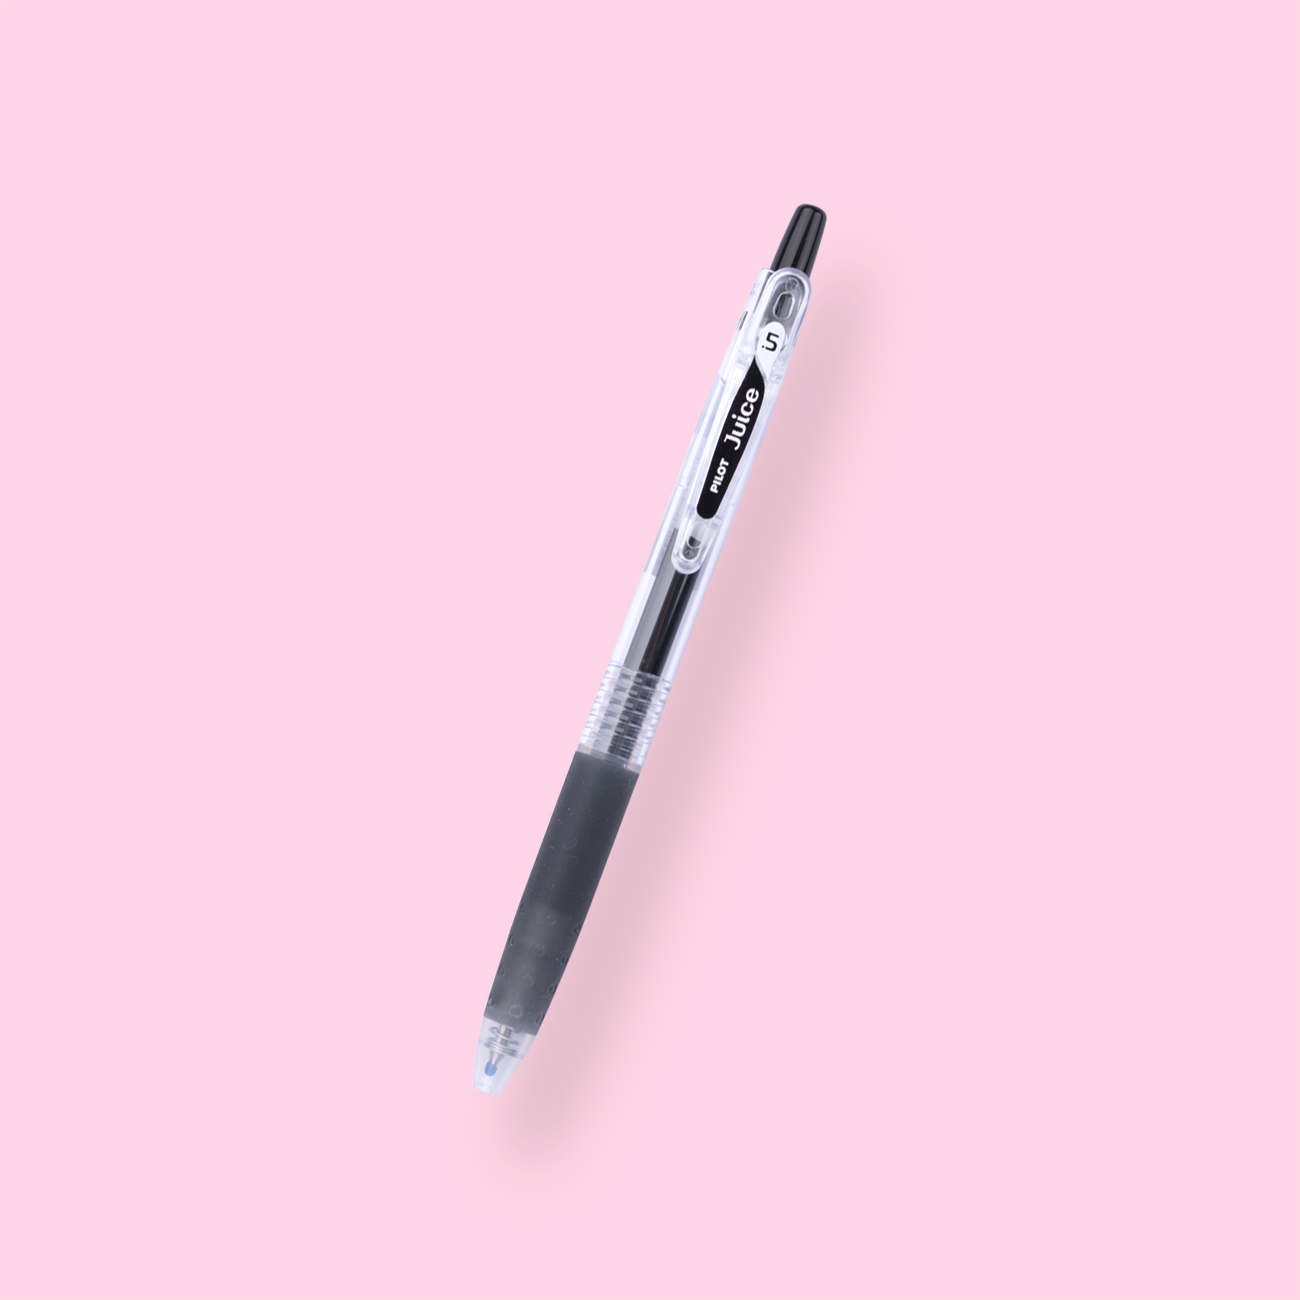 Color Scheme Pen Set - The Black Zon